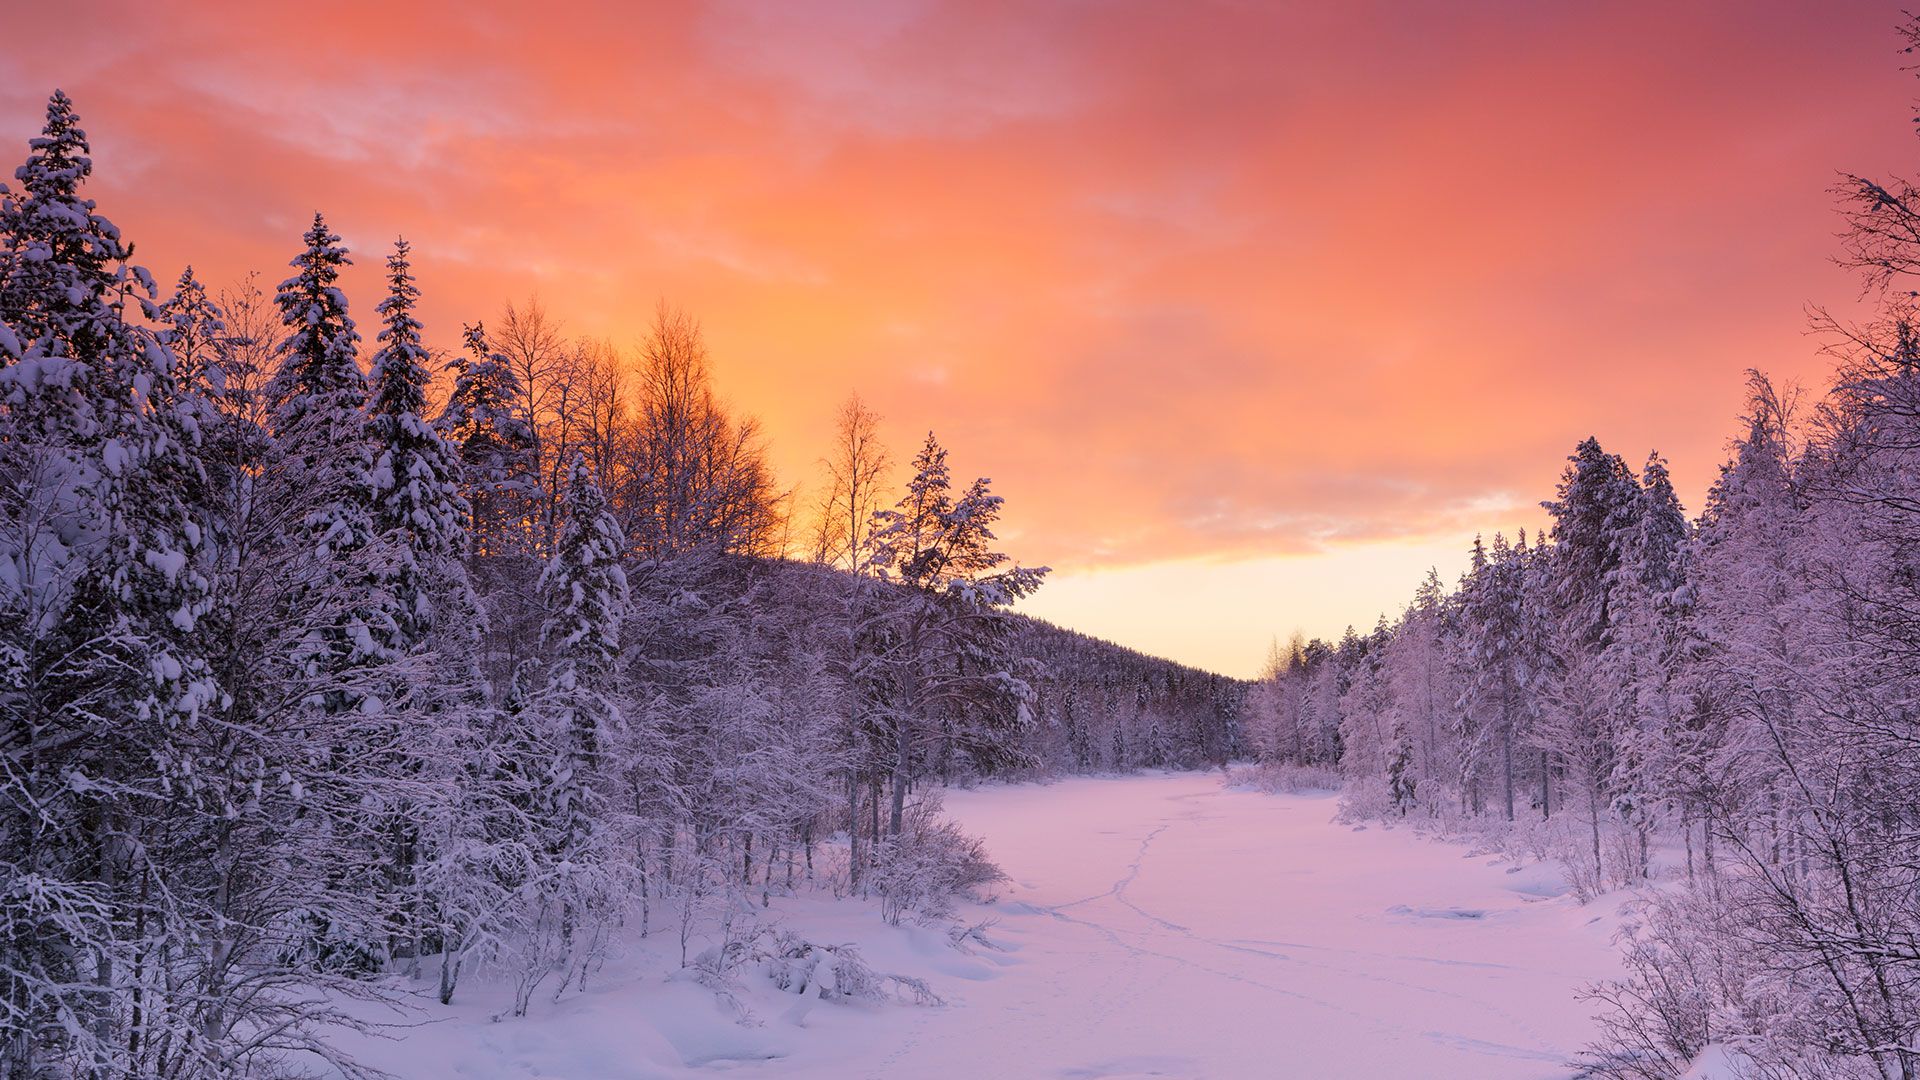 Winter in Finland Suomessa (Lapland)